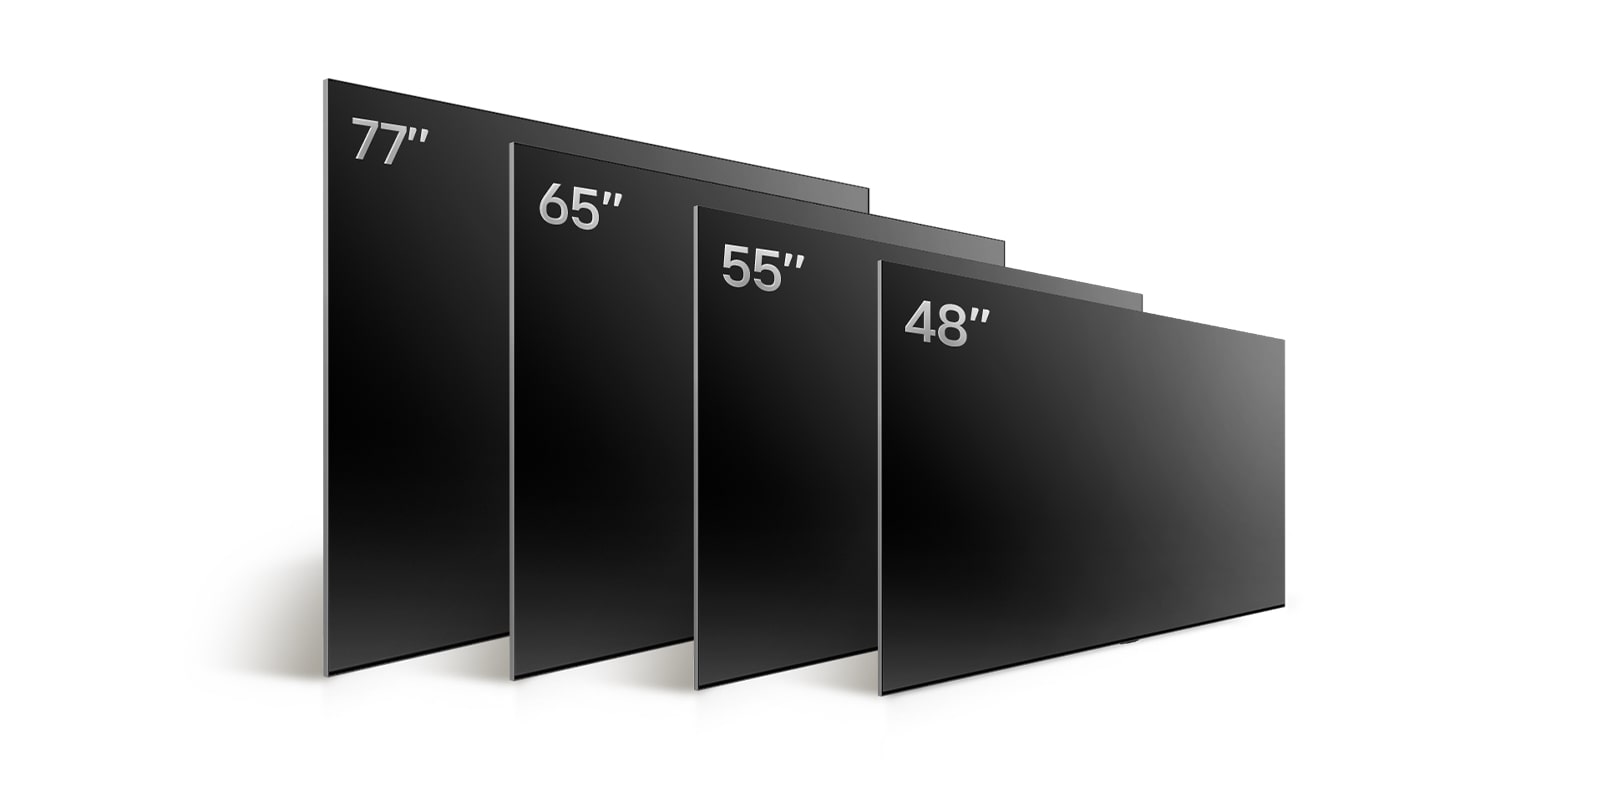 Comparing LG OLED TV, OLED B4's varying sizes, showing OLED B4 48", OLED B4 55", OLED B4 65", OLED B4 77".